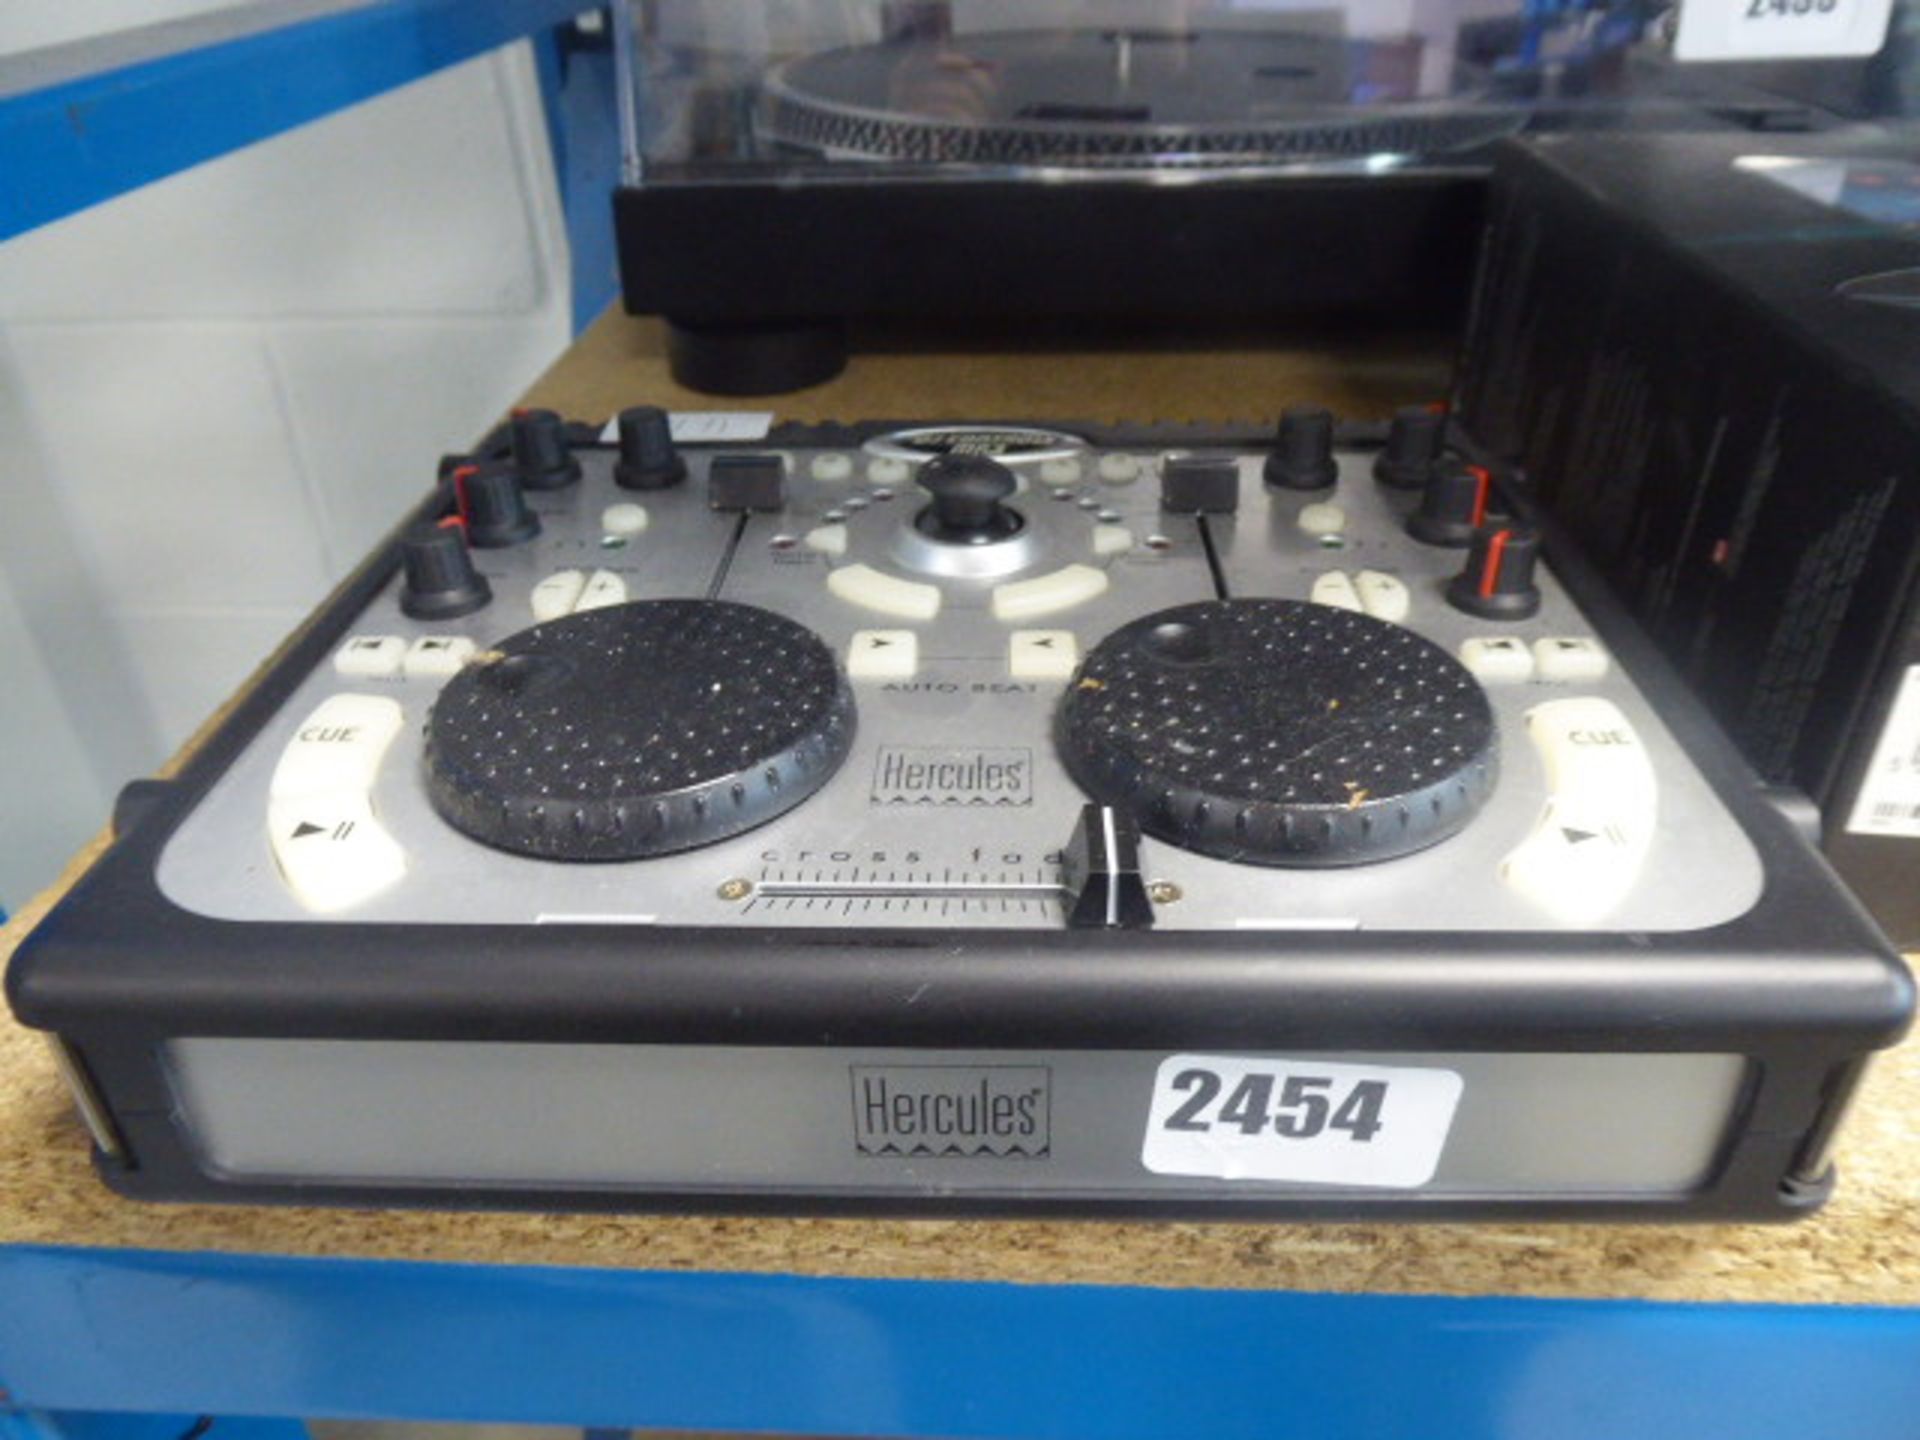 Hercules DJ MP3 control unit